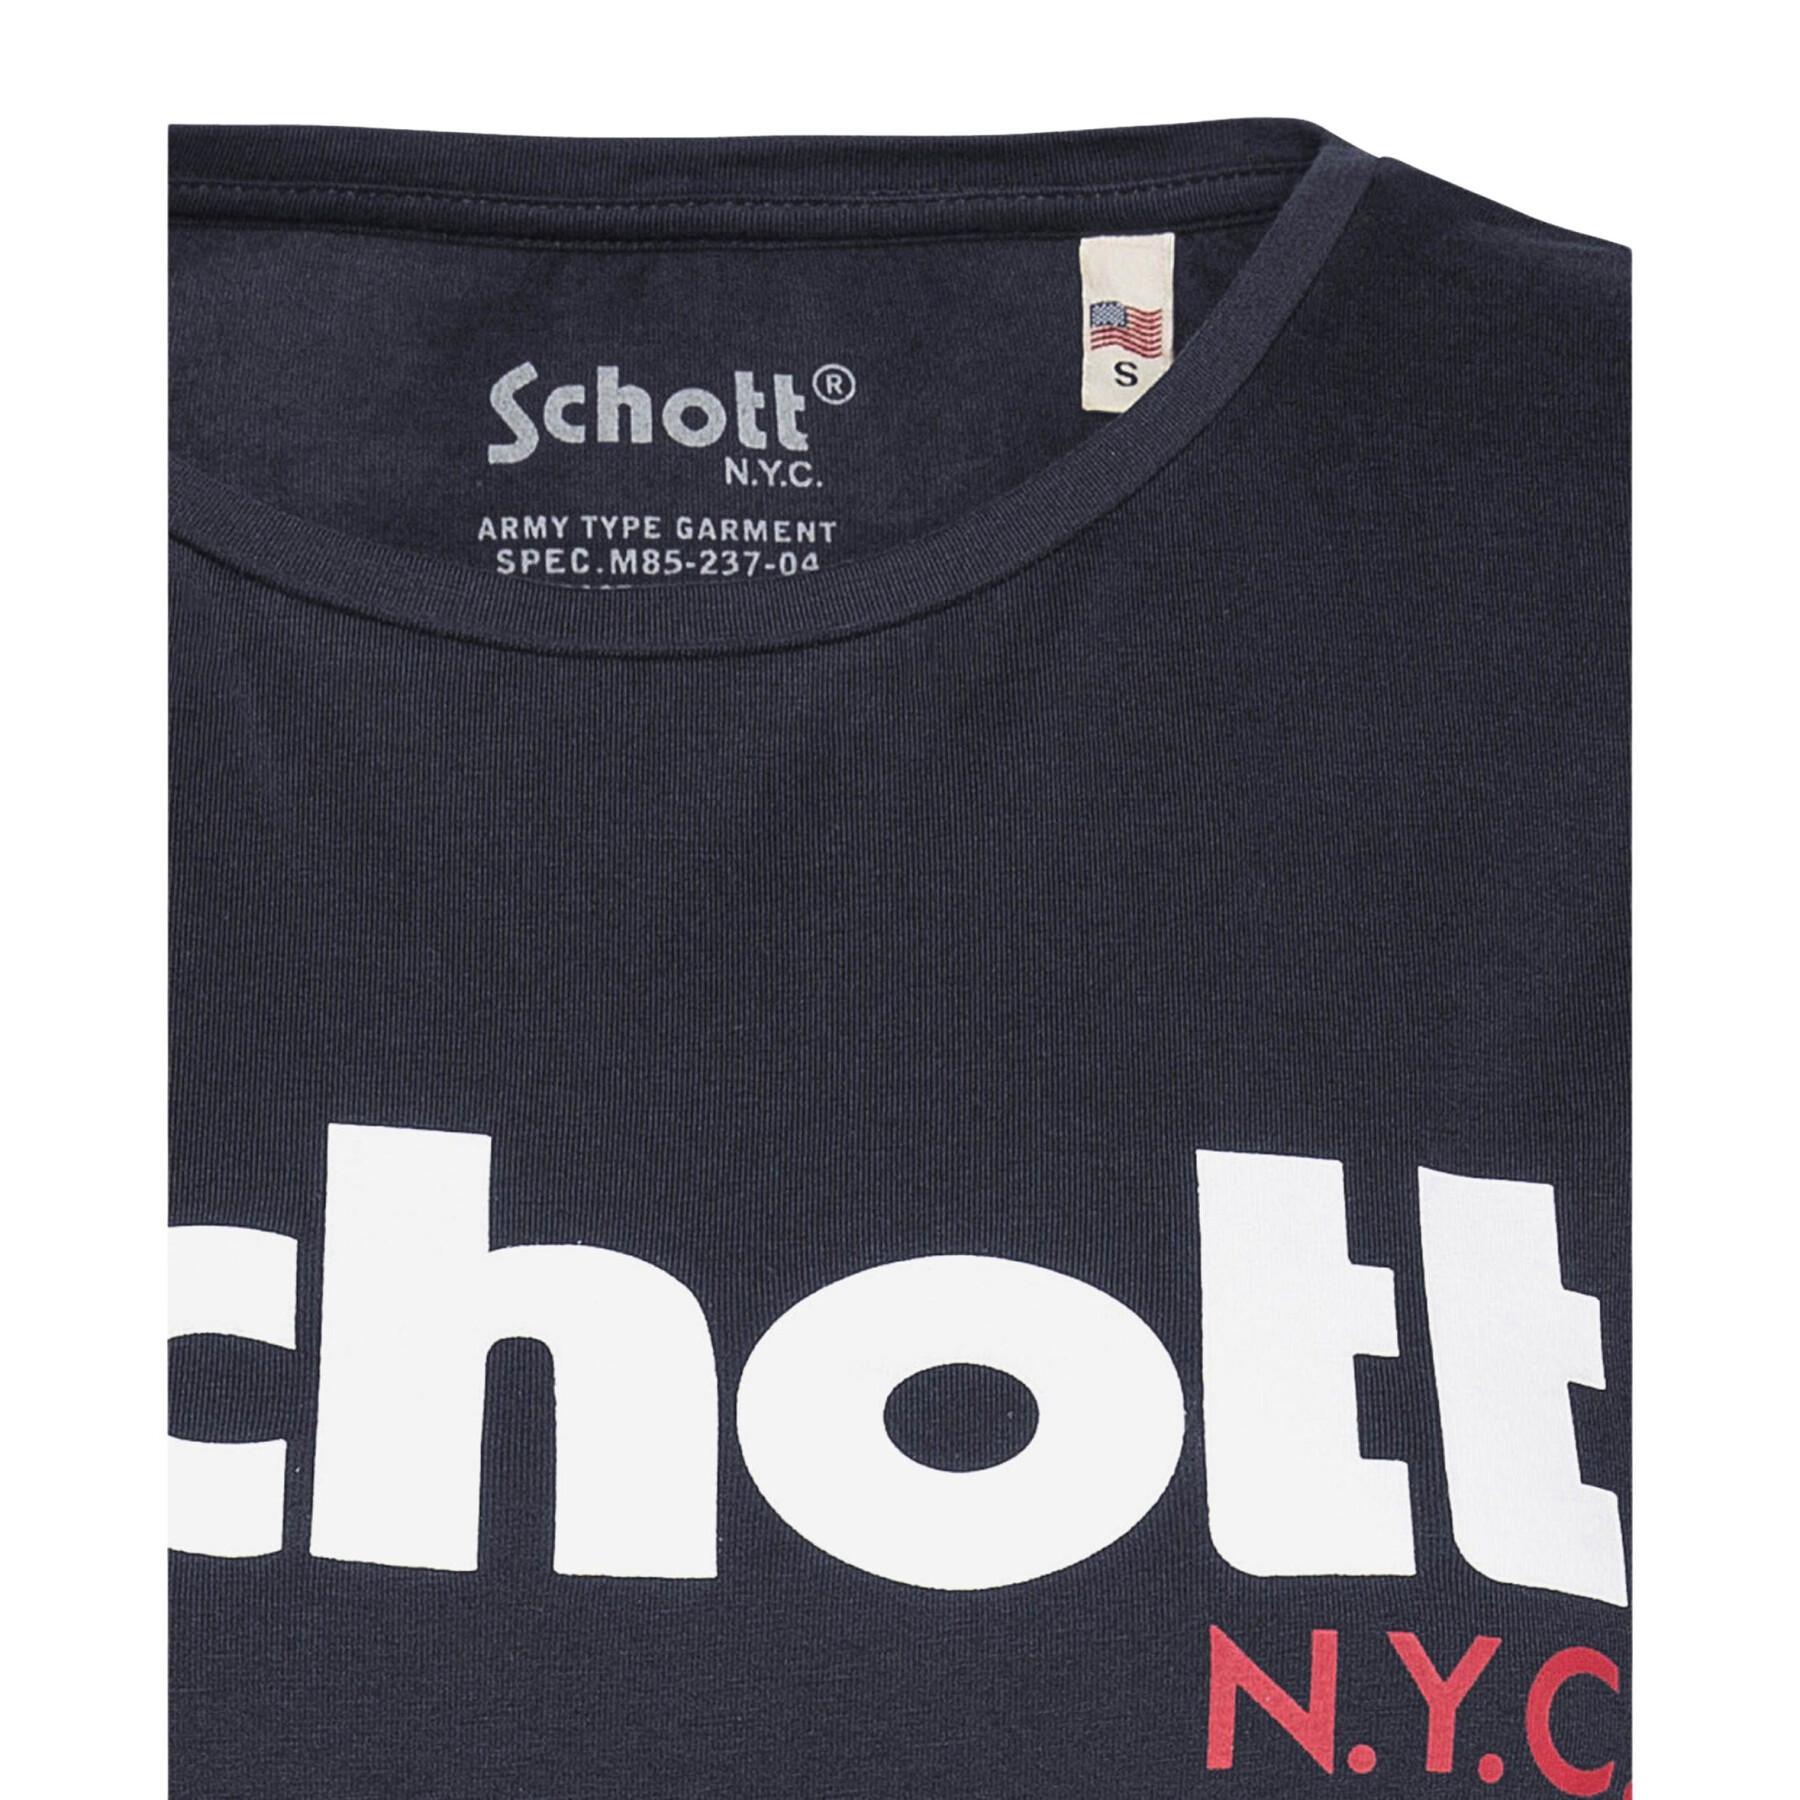 T-shirt imprimé femme Schott